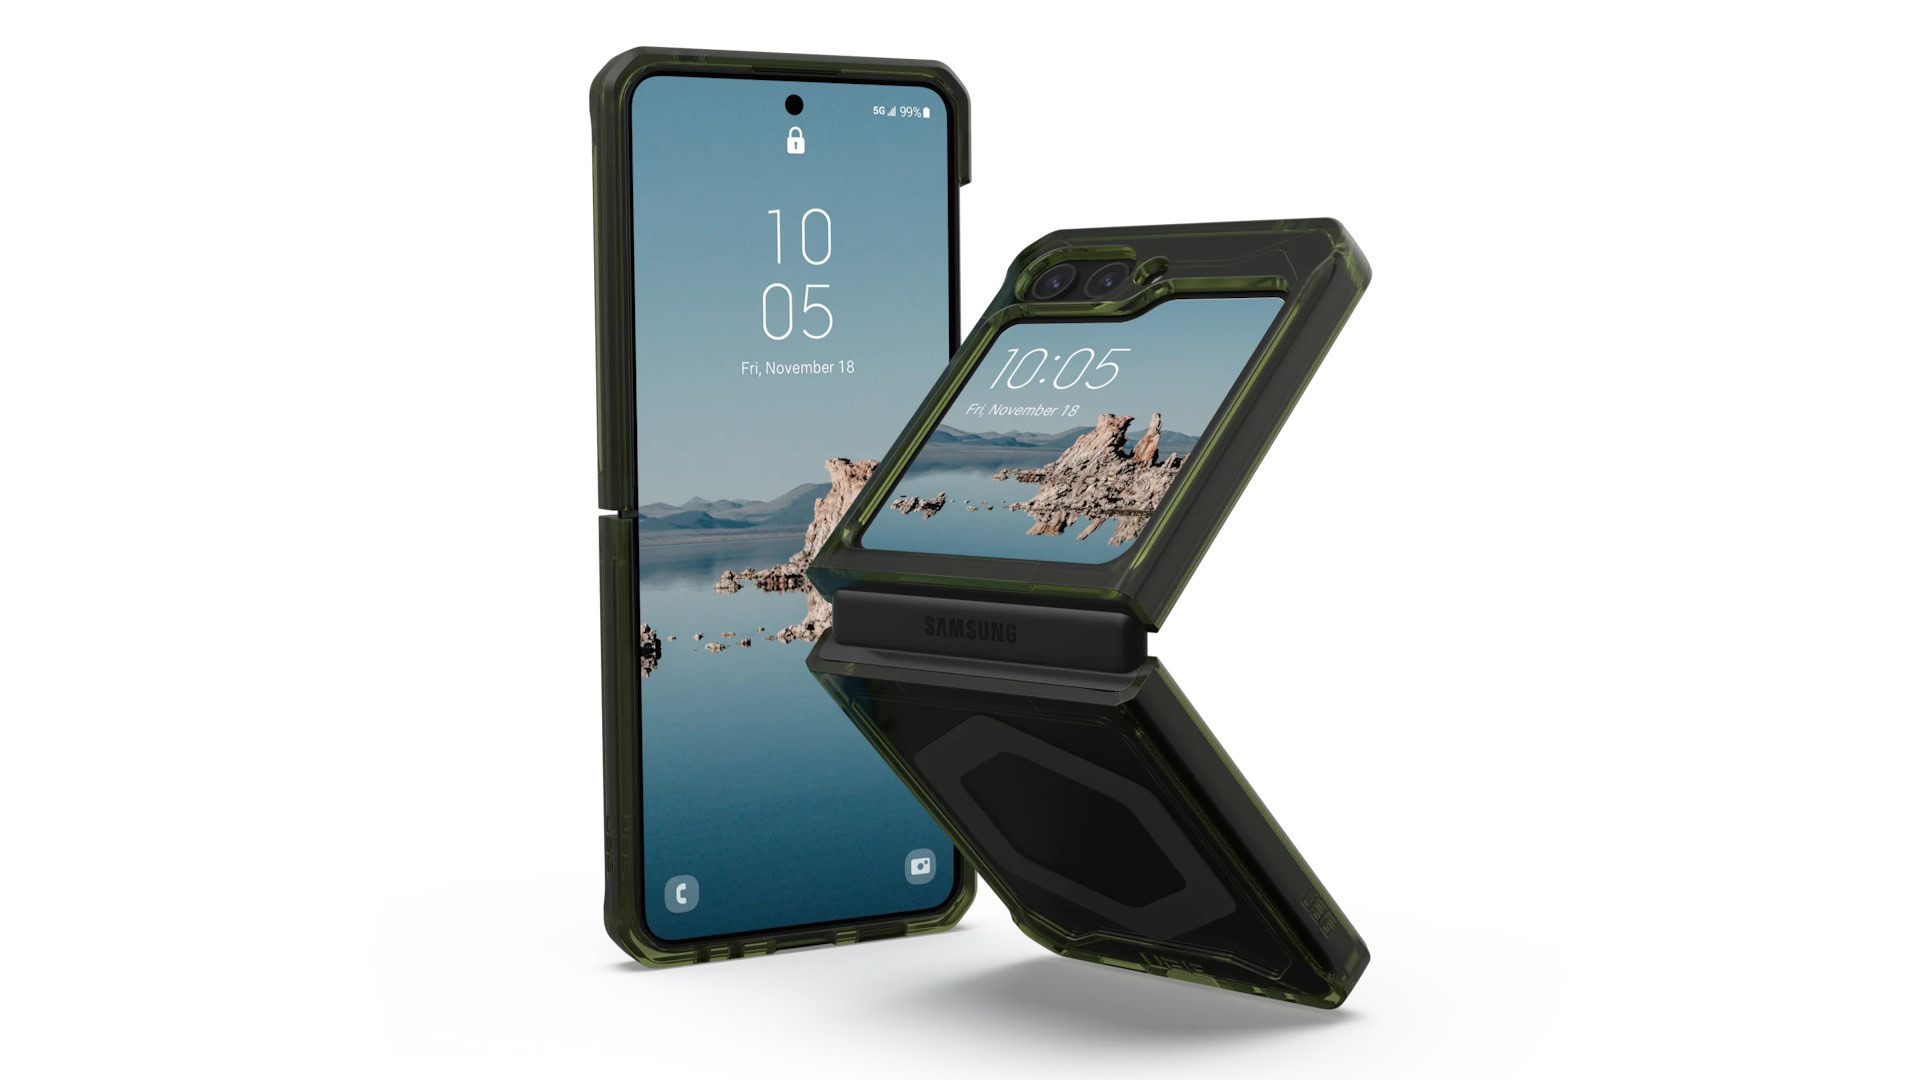 Etiquette - Samsung Galaxy Z Flip 5 Case